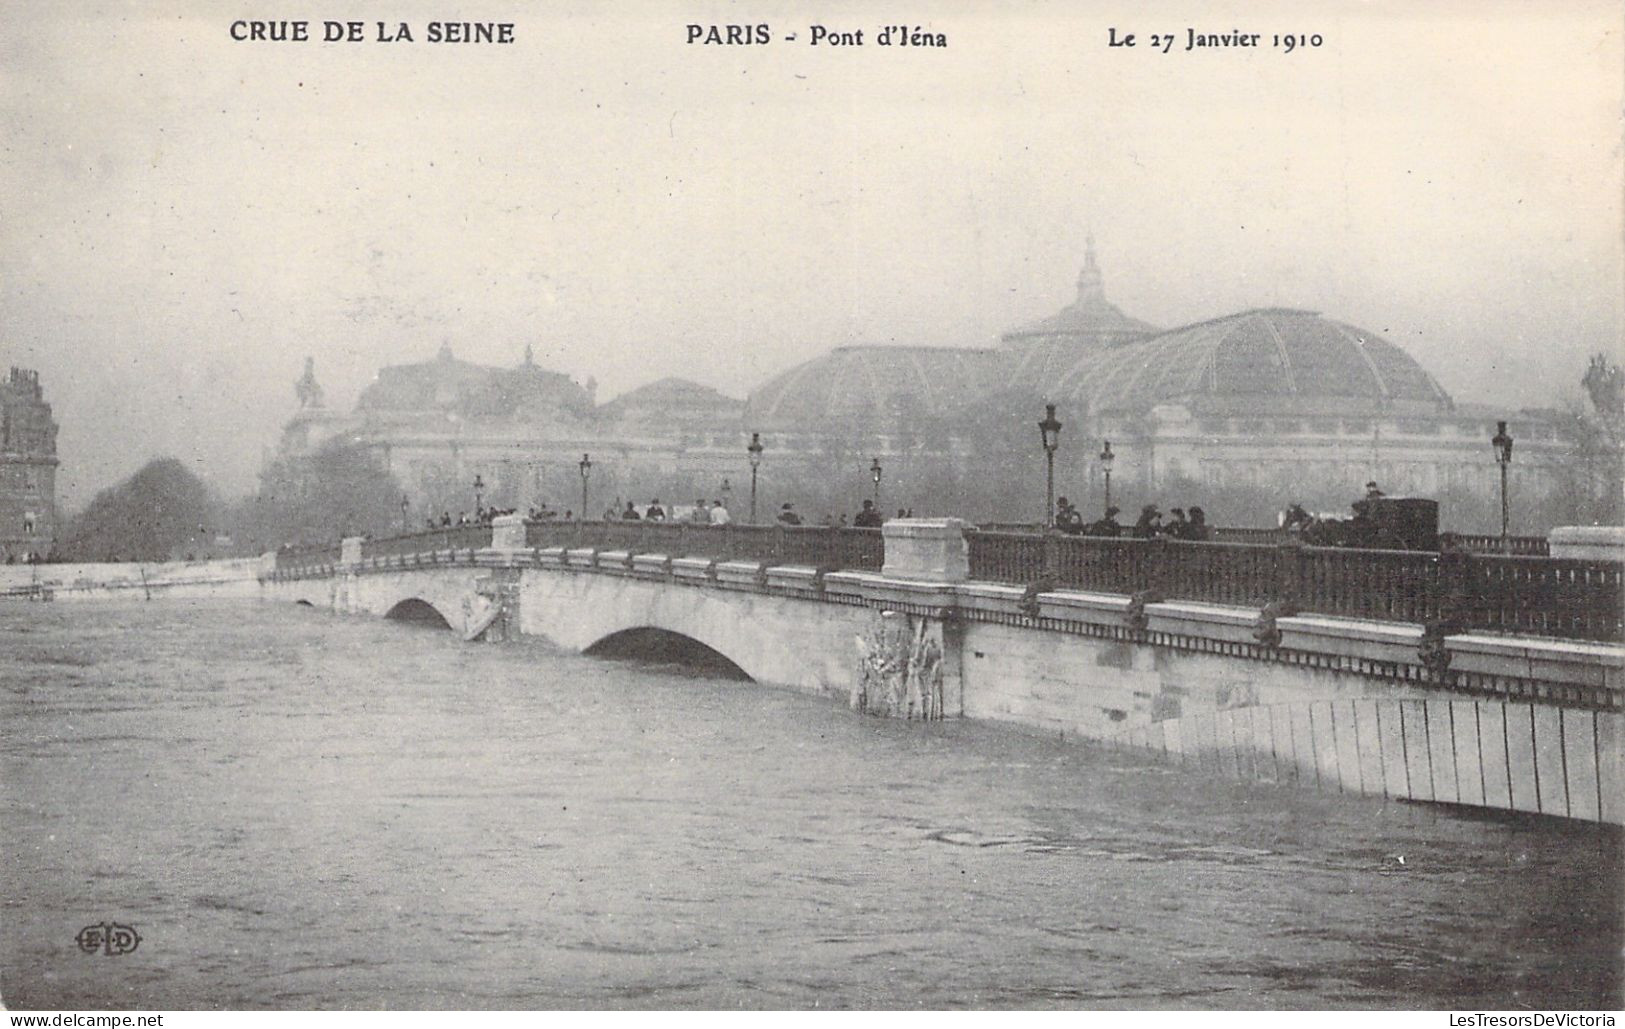 FRANCE - Paris - La Grande Crue De La Seine - Pont D'iéna - 27 Janvier 1910 - Carte Postale Ancienne - La Seine Et Ses Bords